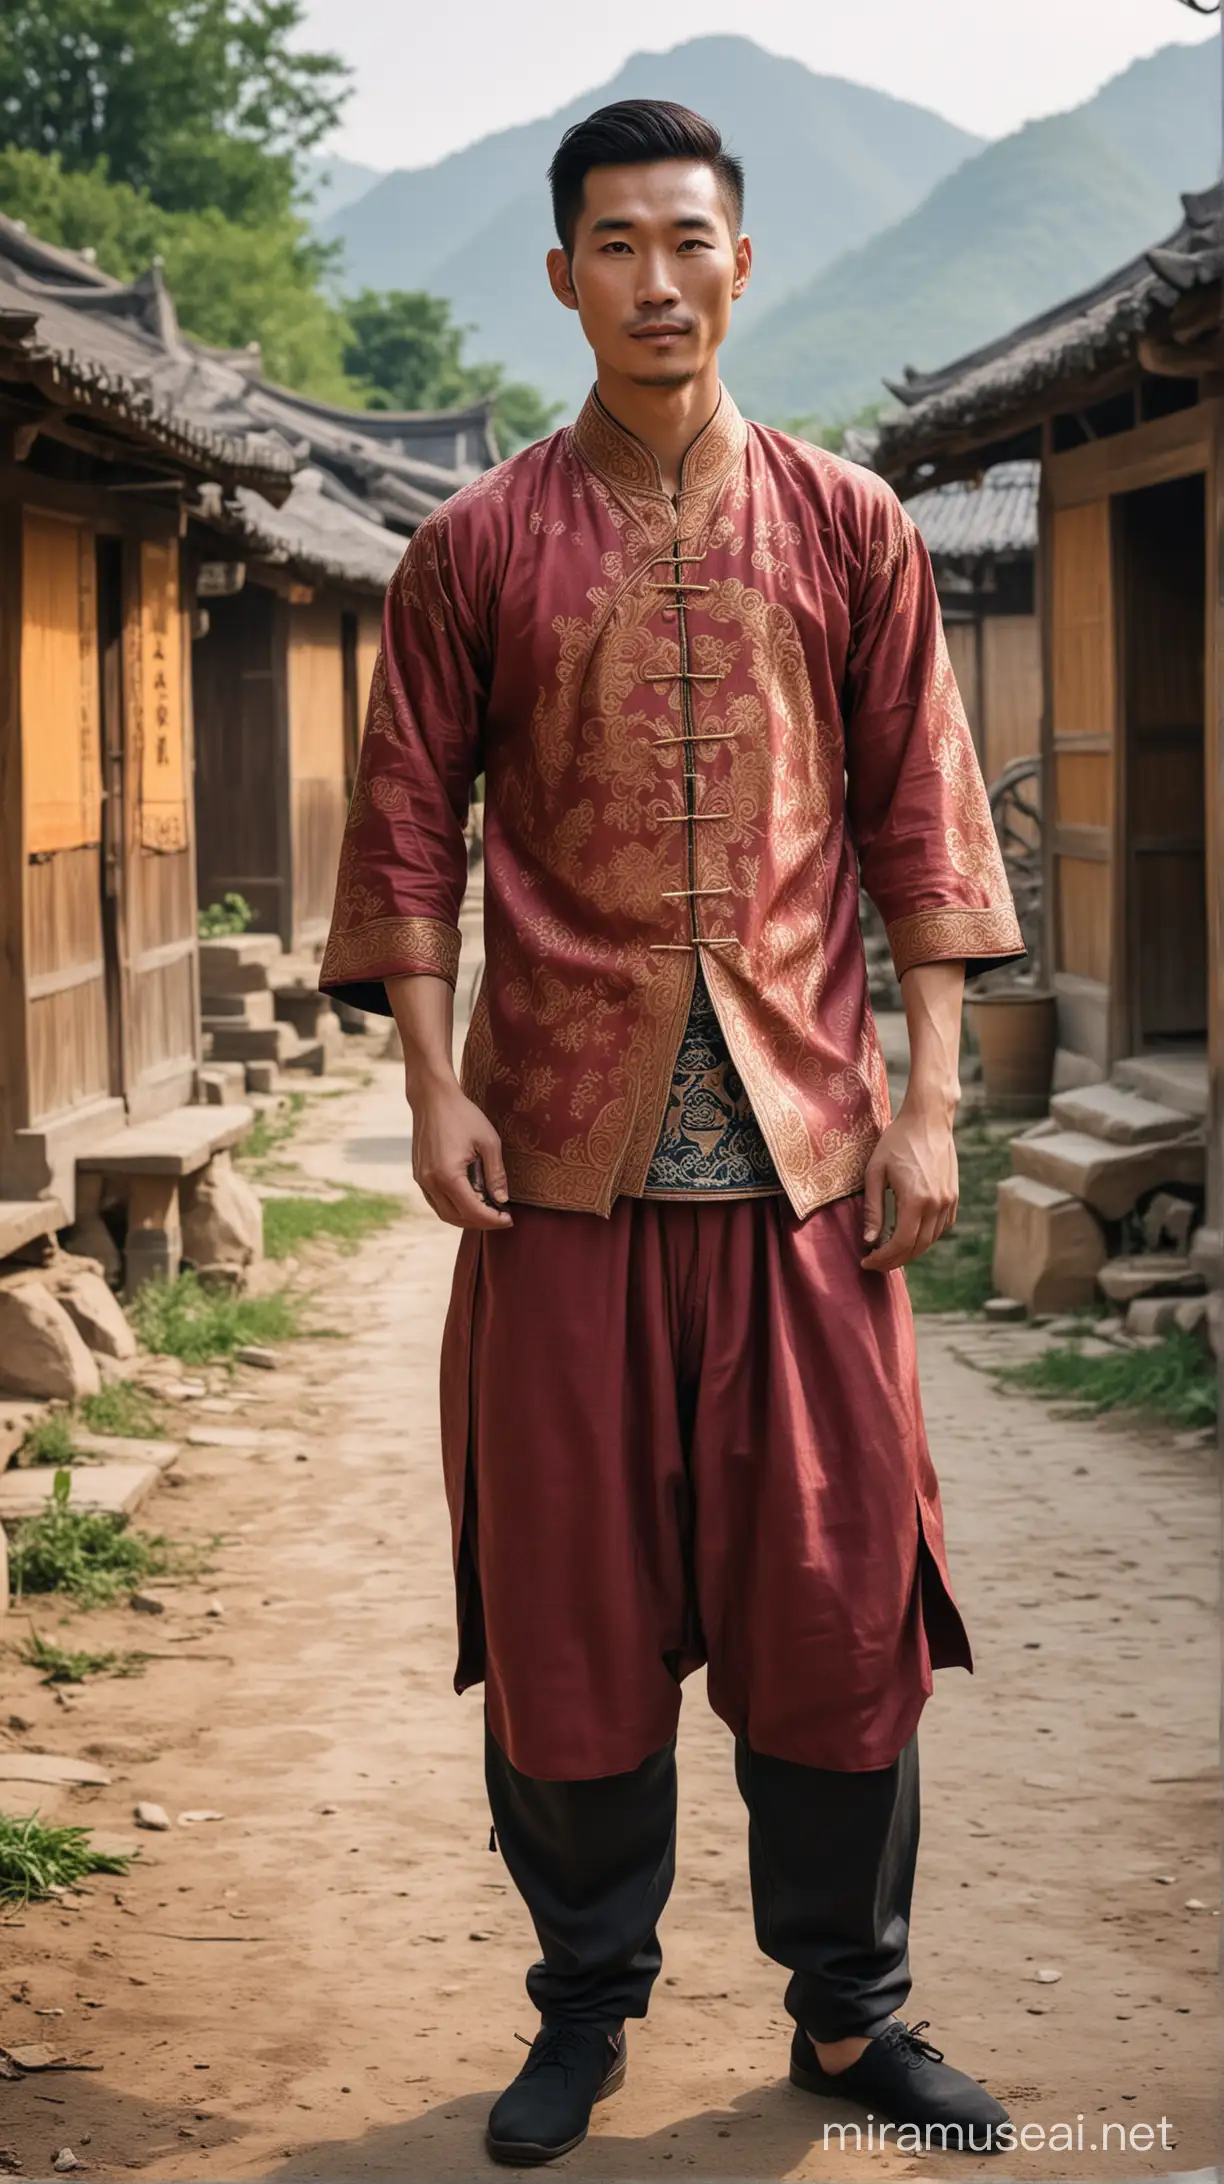 一位身材高大魁梧的中国帅哥穿着修身的民族服装在傣乡拍写真